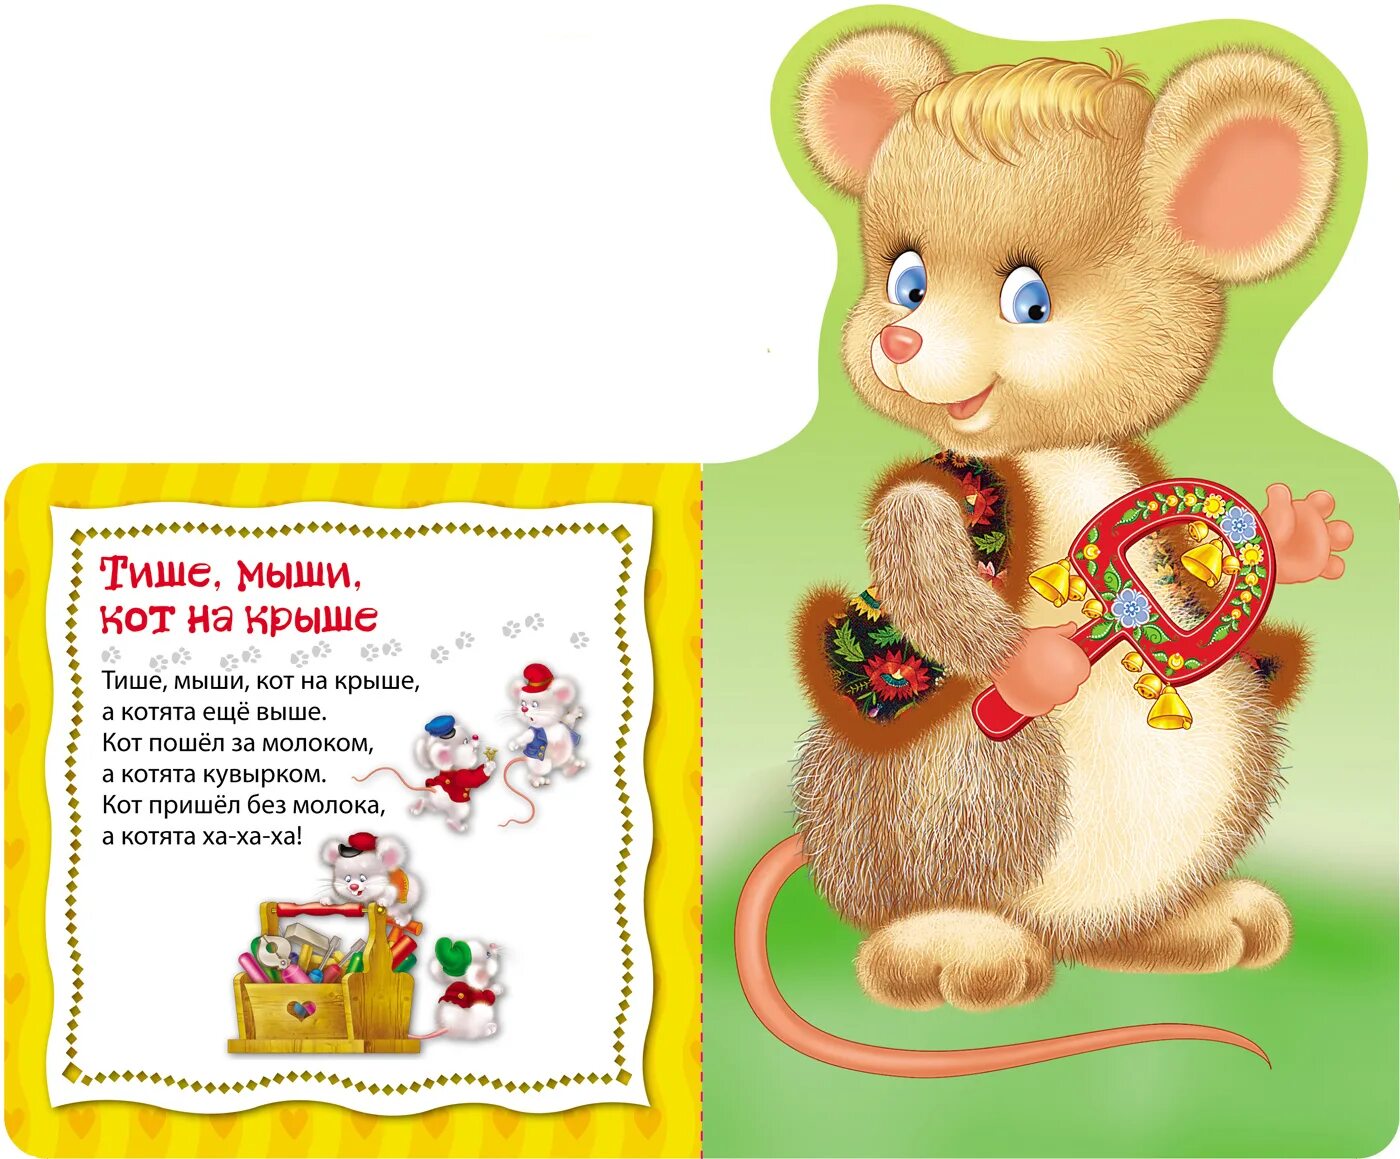 Играть тише мыши. Стих про мышку для детей. Стишки про мышек для детей. Стихотворение про мышь для детей. Стишок про мышку для детей.